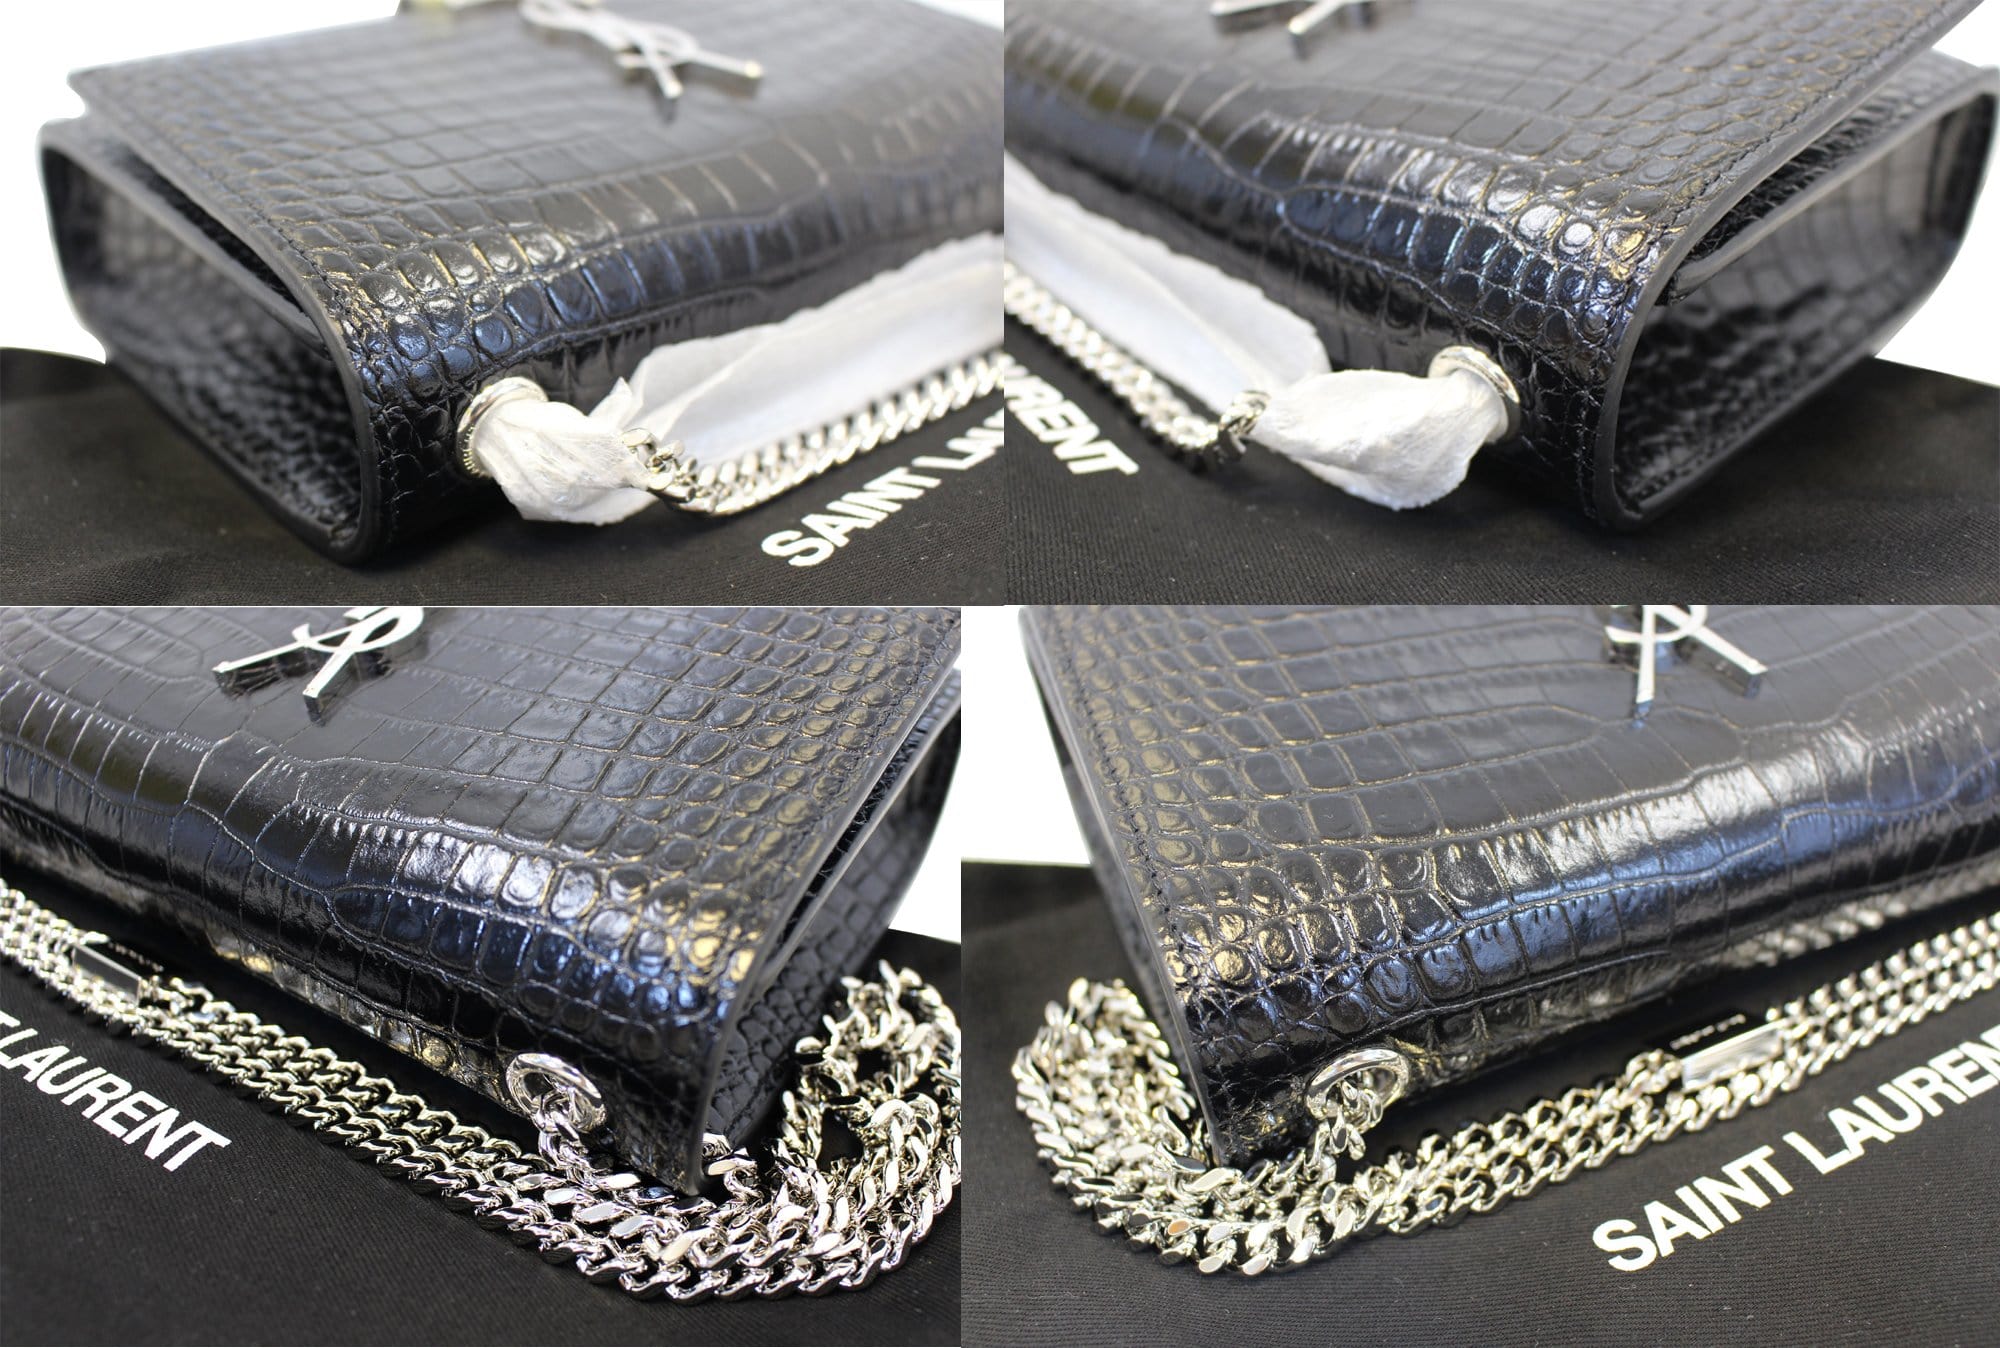 SAINT LAURENT PARIS Shoulder Bag 515822 Chain bag leather Black Silver  Women Used